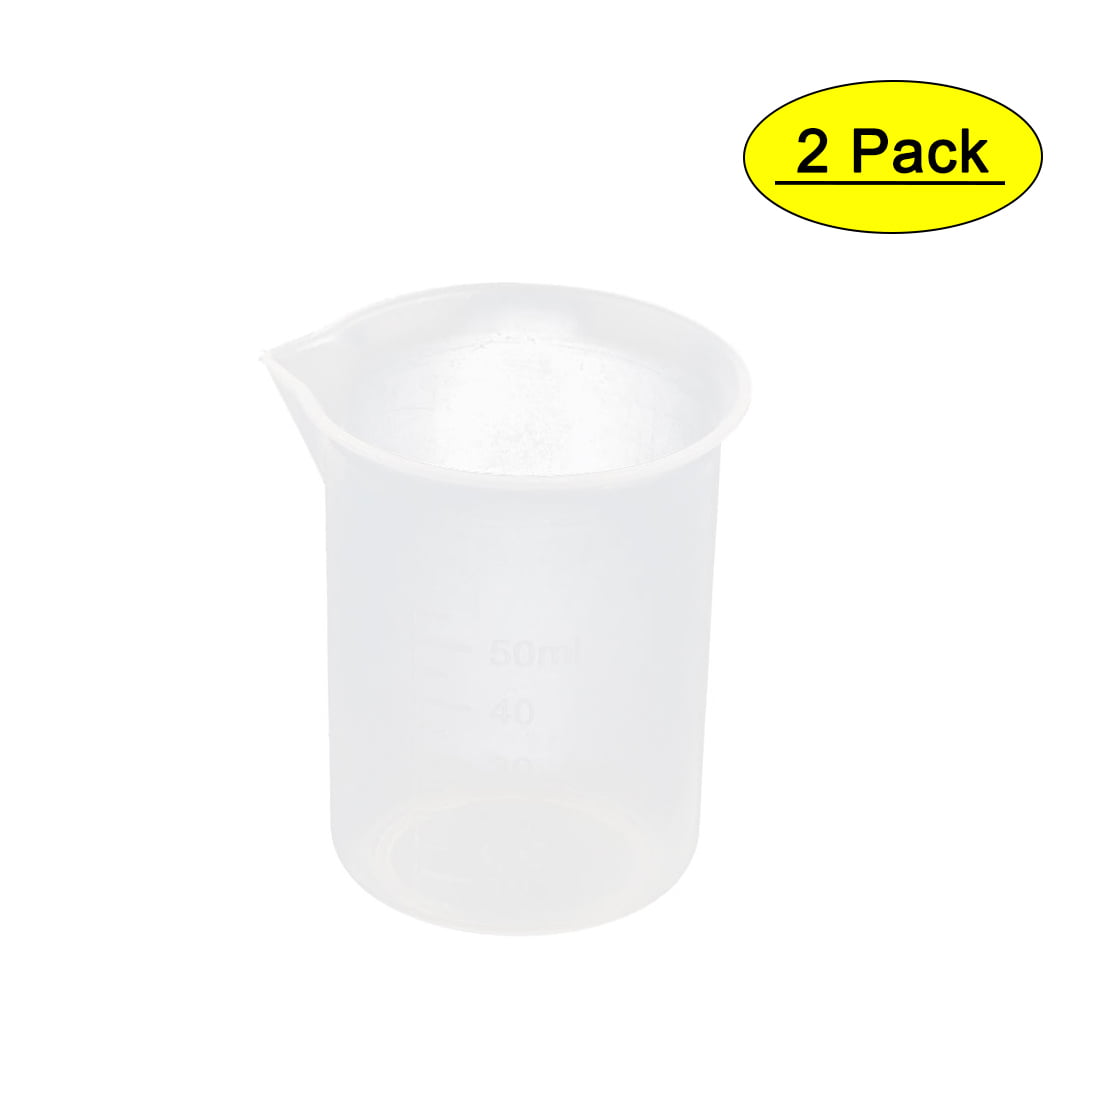 Clear Plastic Measuring Cup Jug pour Spout Surface Supplies Kitchen New P7Z7 